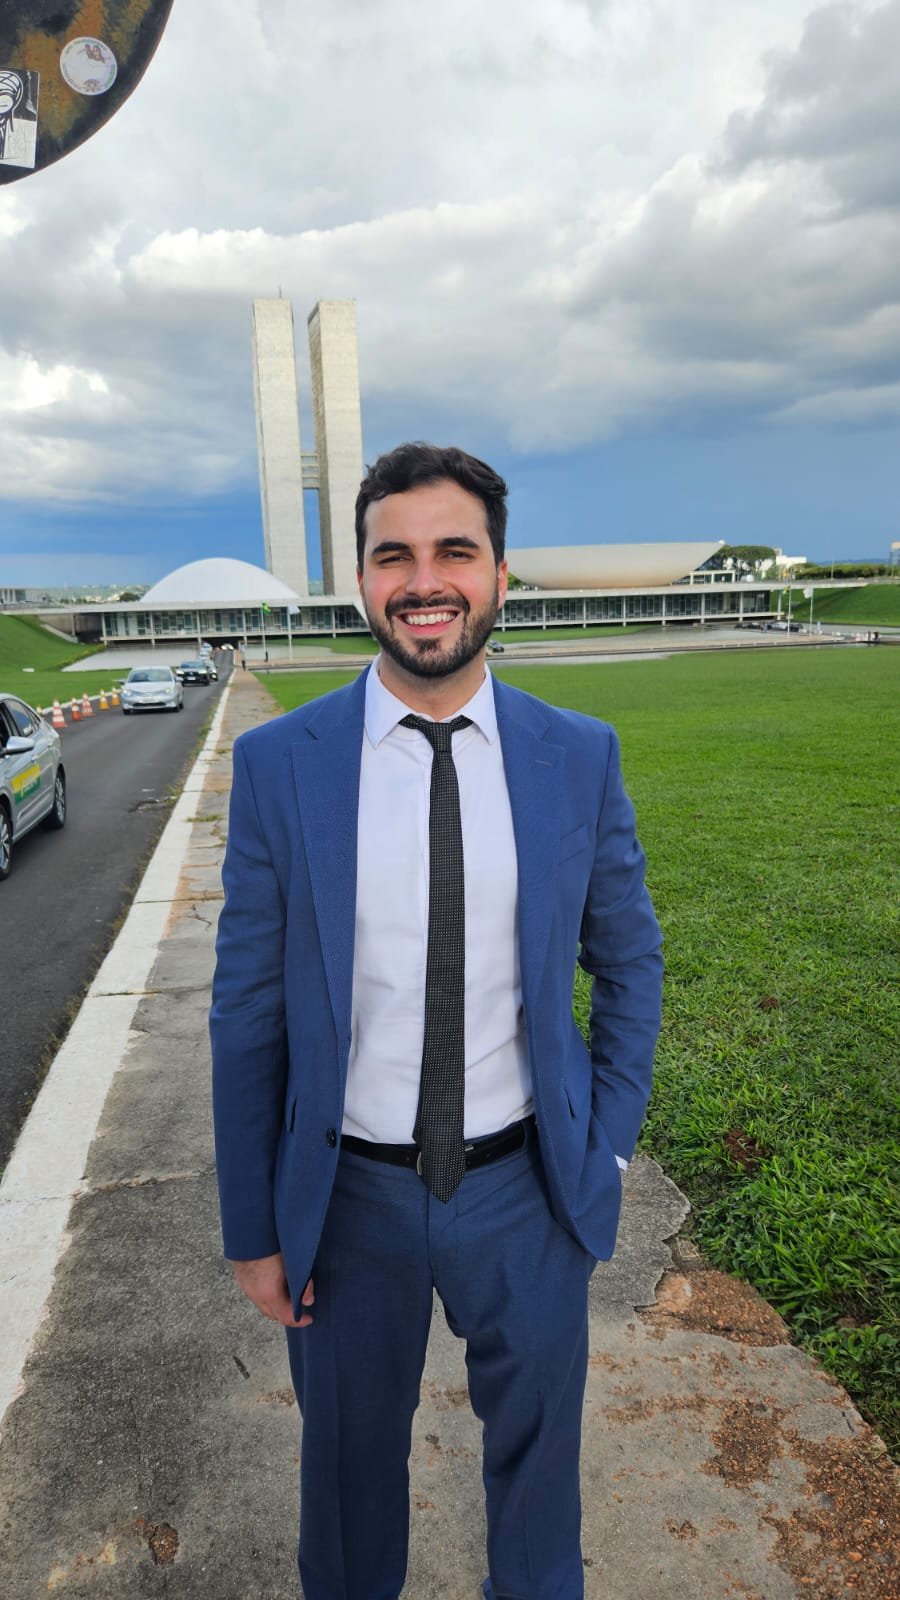 Friburguense, fundador da Rede Educativa Brasil, é convidado a participar do ECOSOC Youth Fórum 2023 na ONU em Nova York